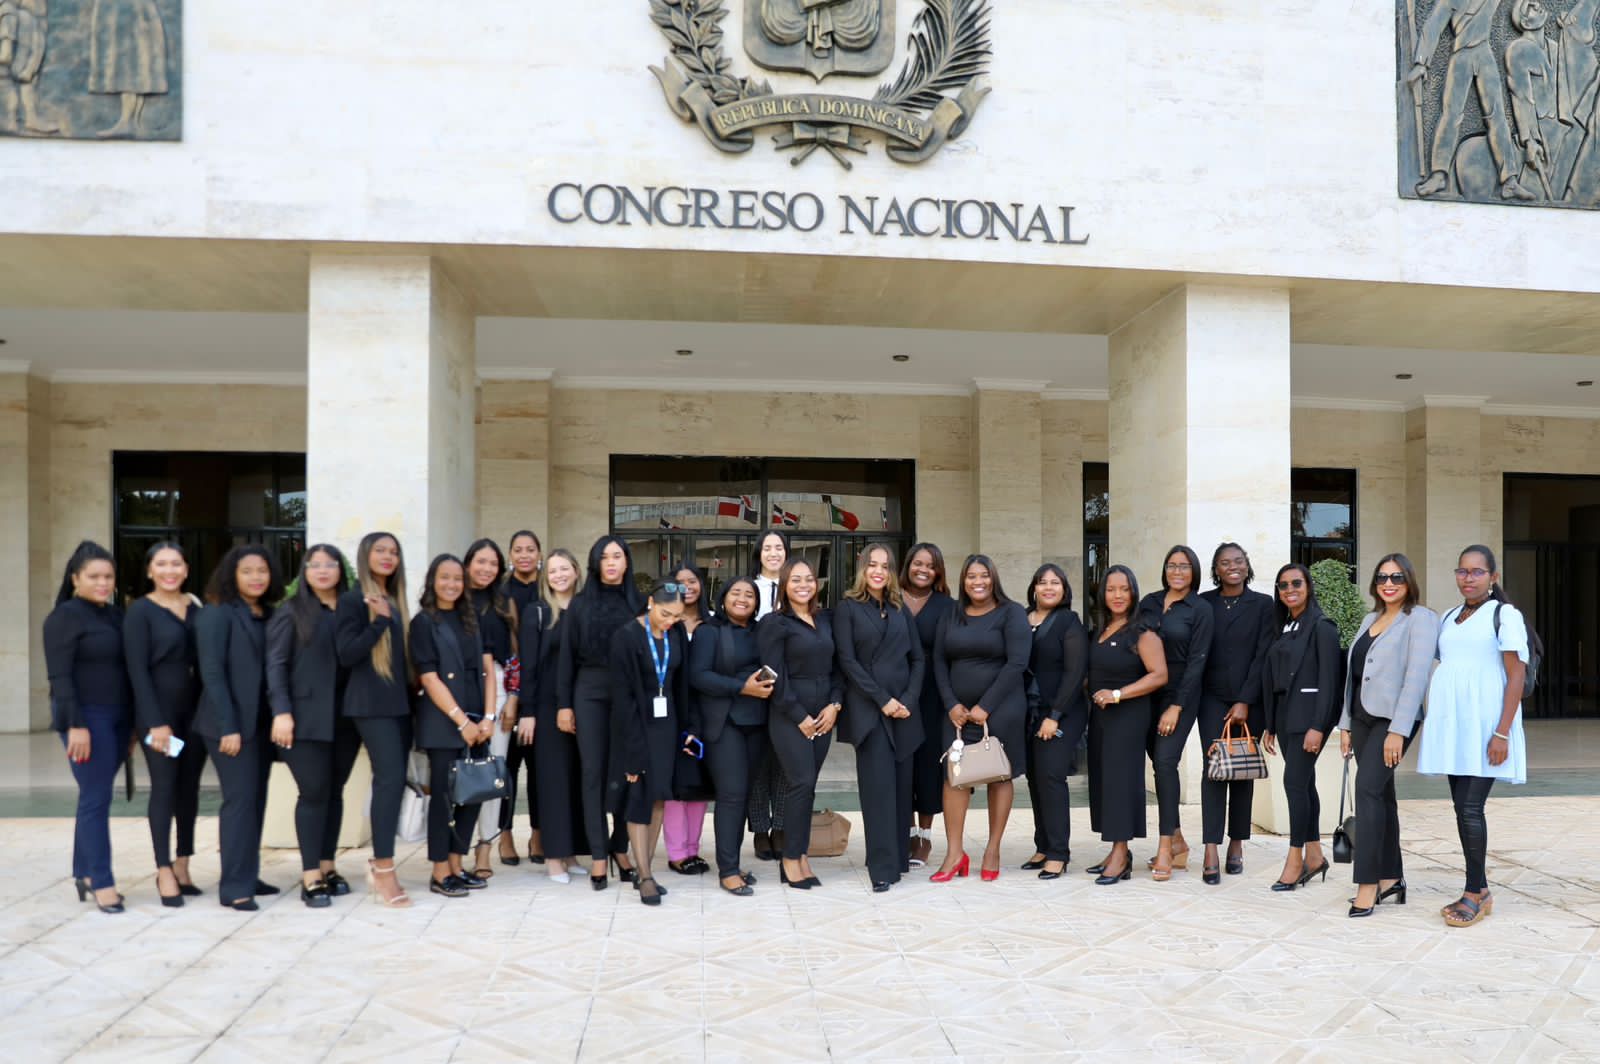 Las damas fueron invitadas por su representante senatorial, Franklin Rodríguez; y llegaron al Congreso Nacional bajo la coordinación de la joven Lissy Correa, quien contó la experiencia vivida durante su estadía.